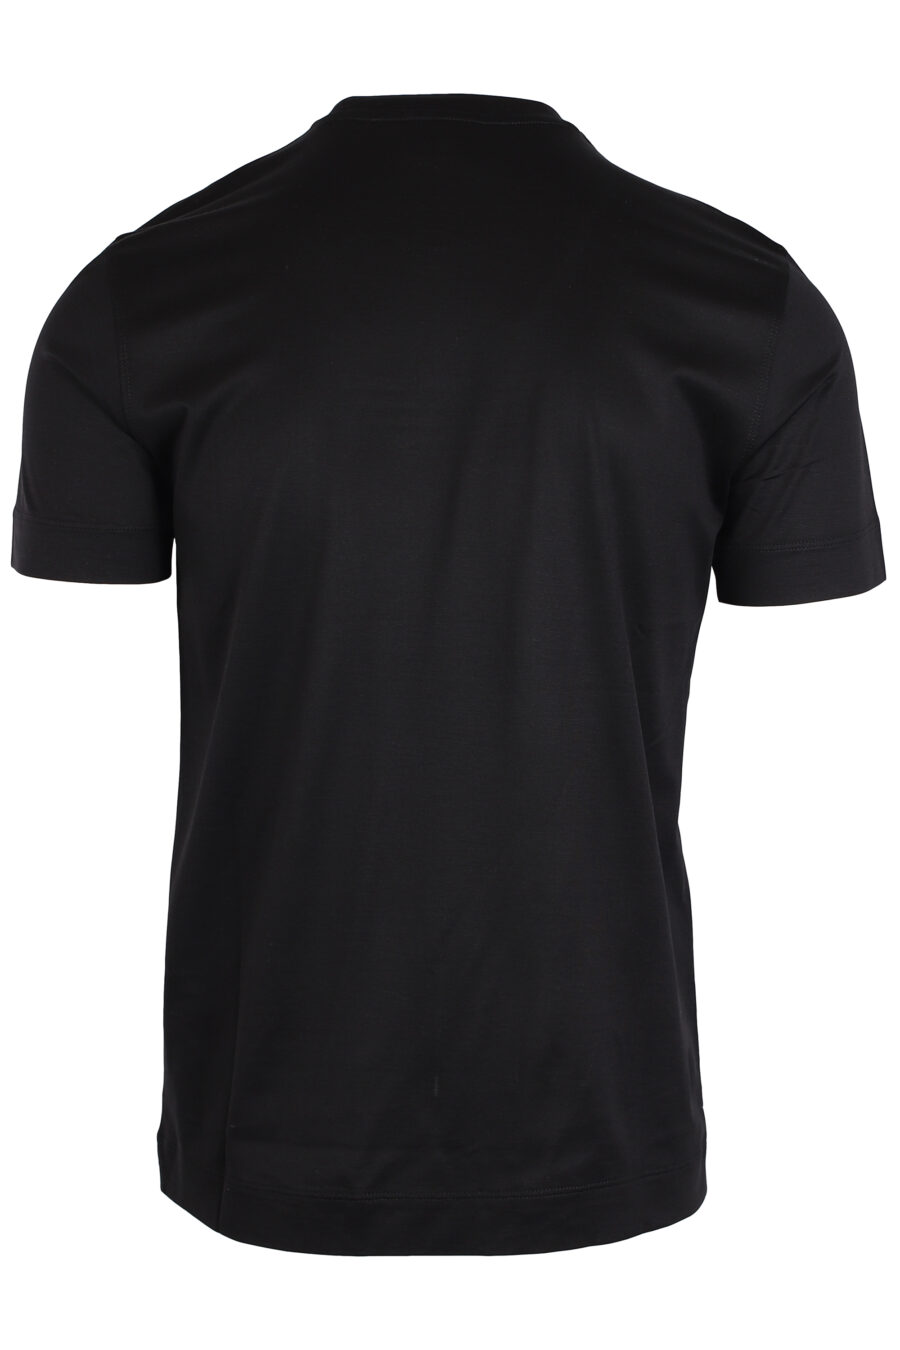 Camiseta negra con minilogo águila en degradé blanco - IMG 3979